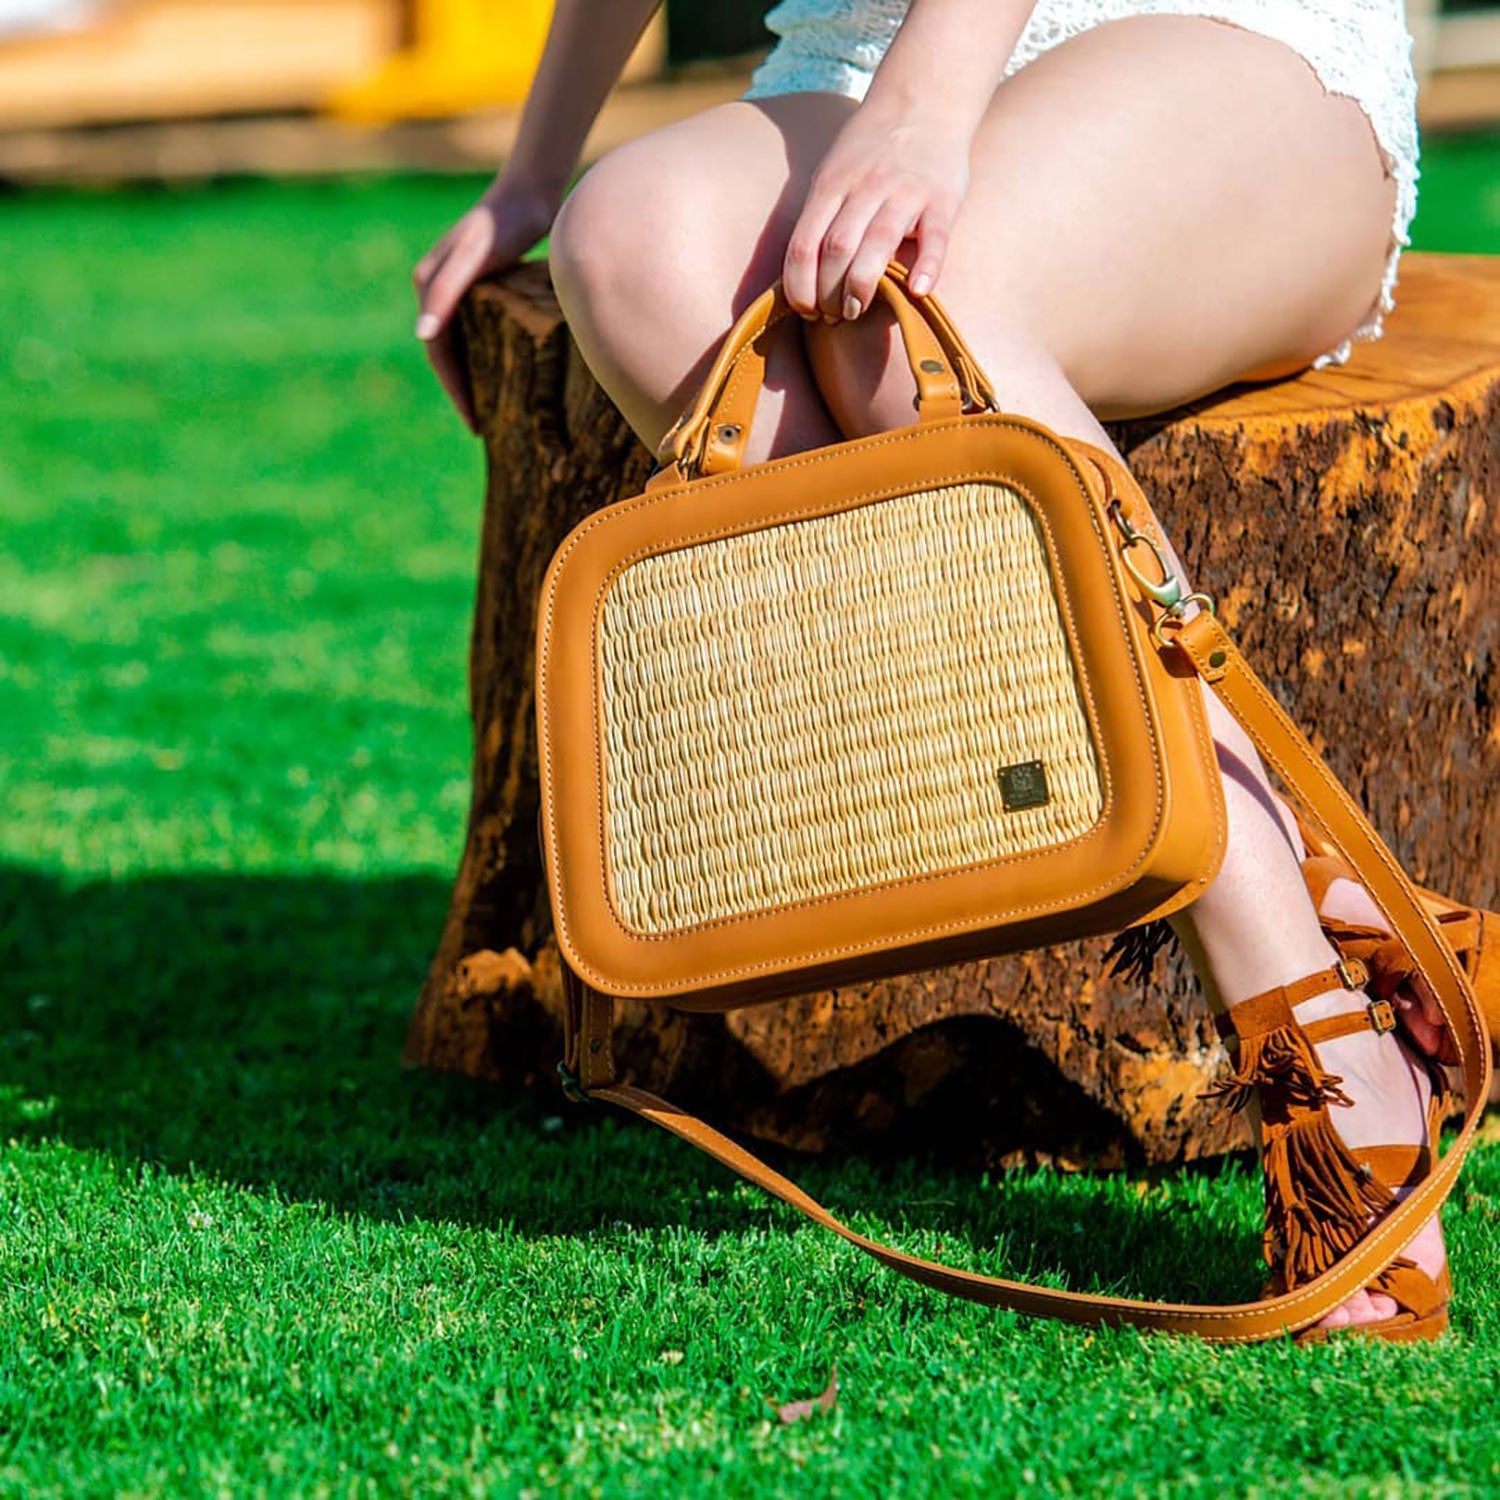 6 Ways to Wear the Straw Basket Bag Trend - Sydne Style